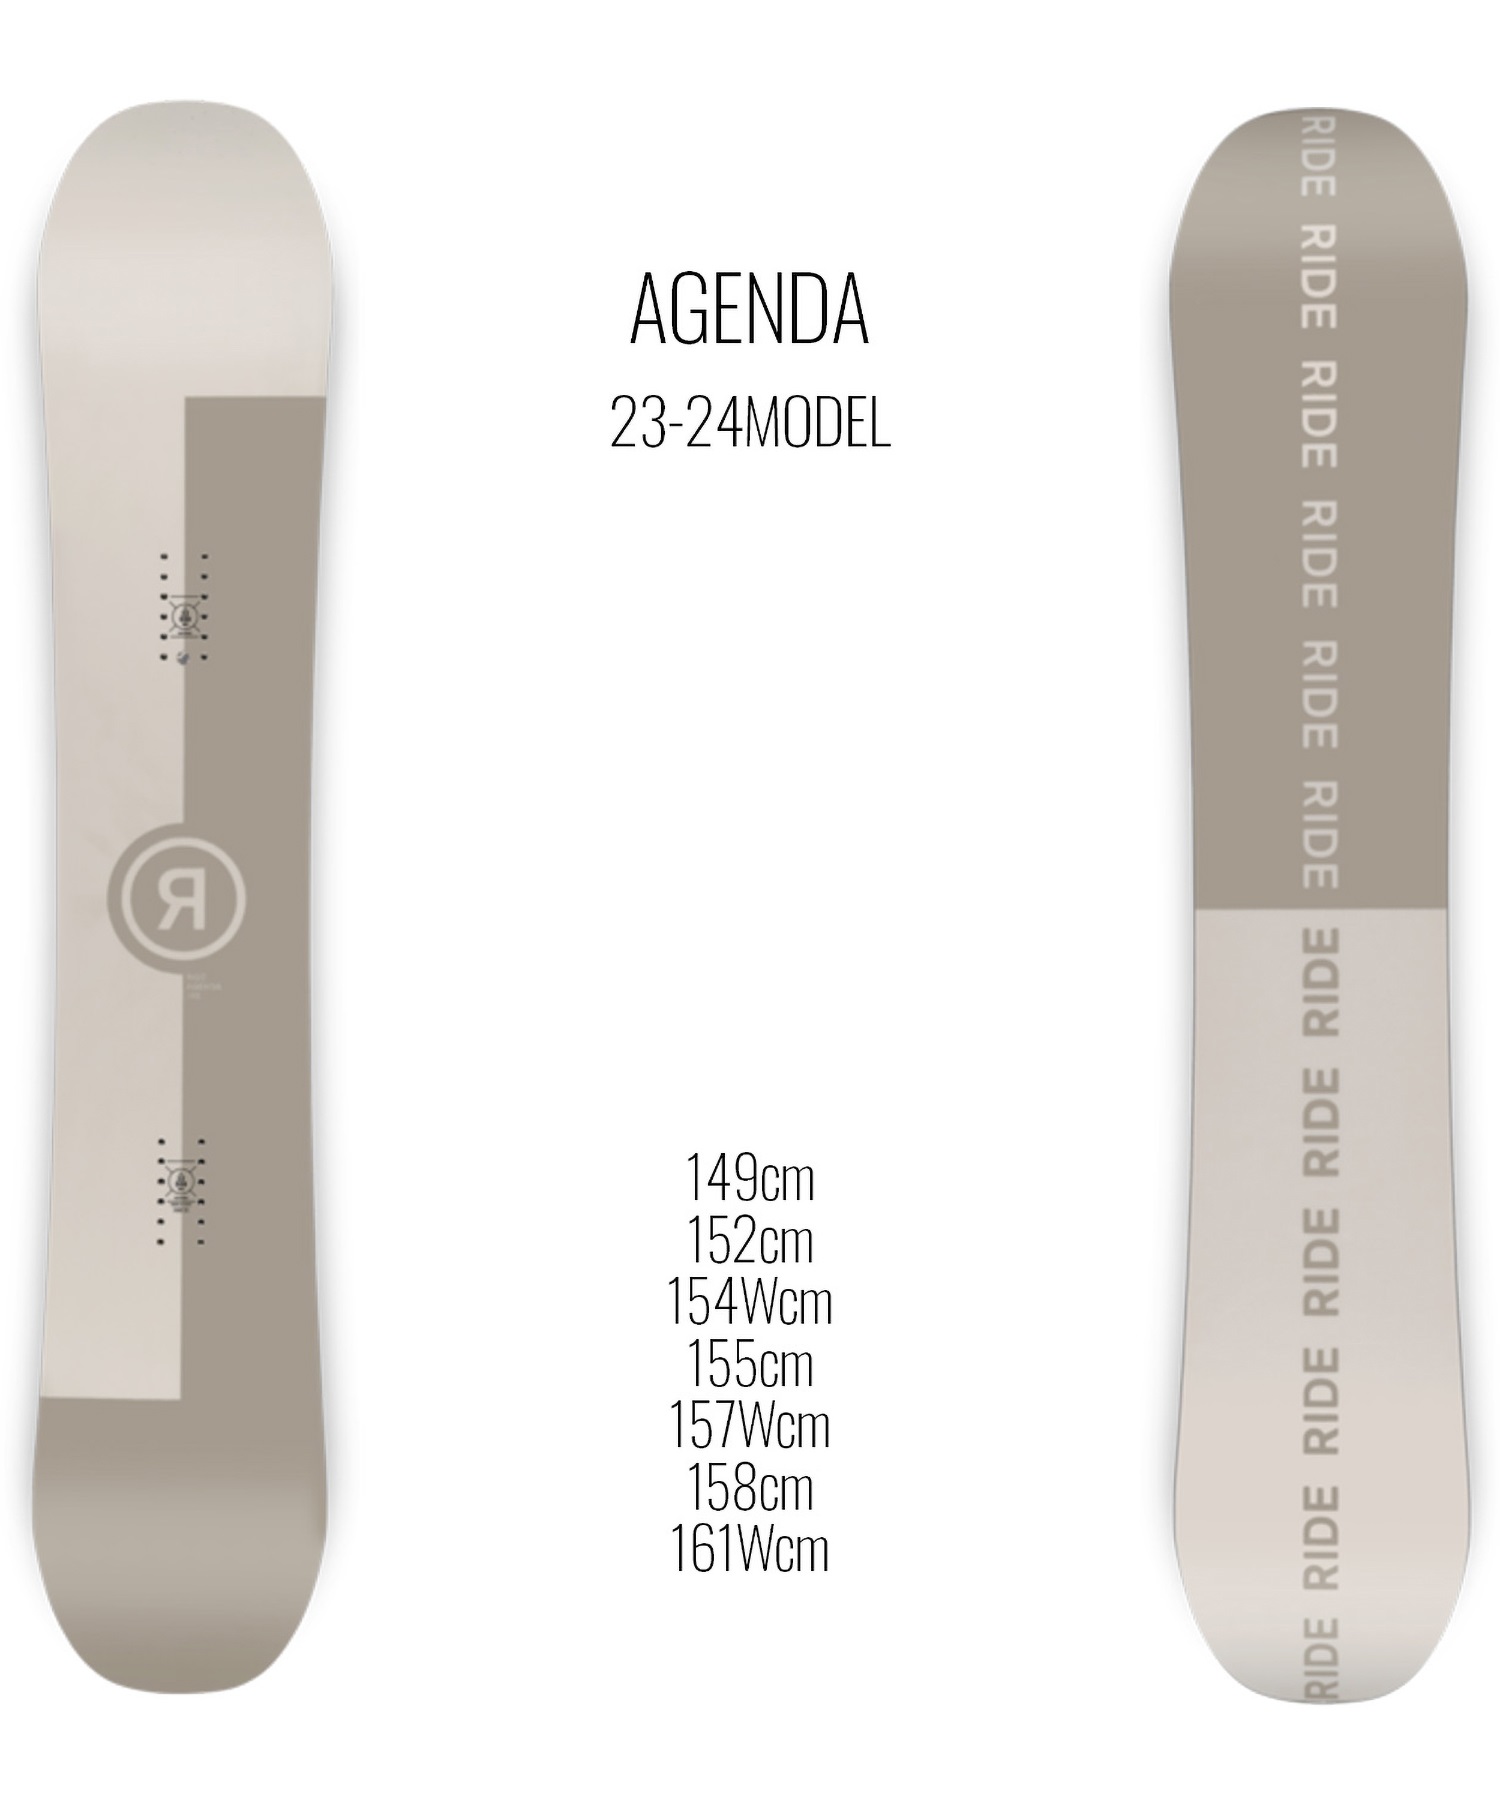 【早期購入/店頭受取対象外】スノーボード 板 メンズ RIDE ライド AGENDA 23-24モデル ムラサキスポーツ KK C2(AGENDA-149cm)